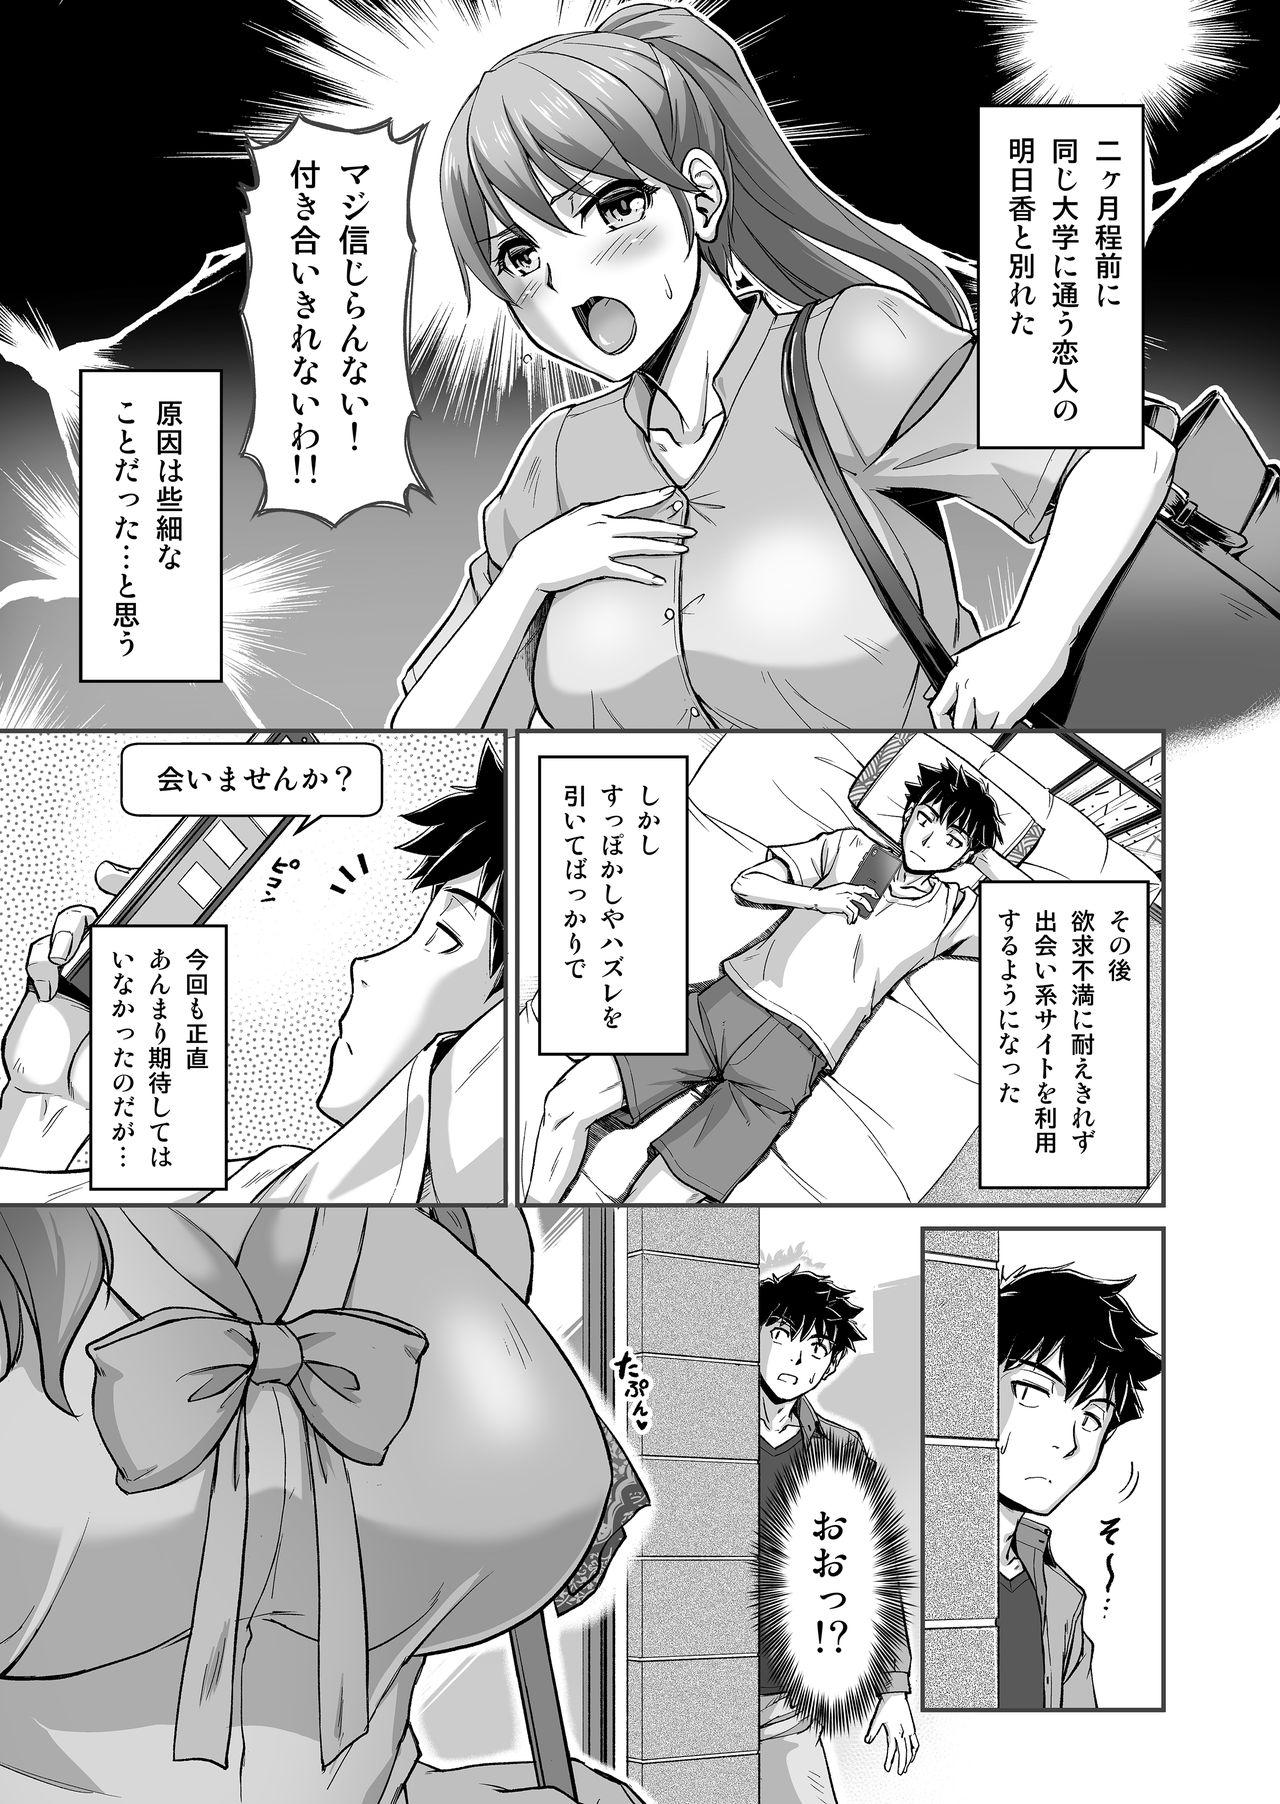 Vip Deaikei de Nanpa Shitara Motokano no Gibo ga Kita - Original Jacking - Page 2